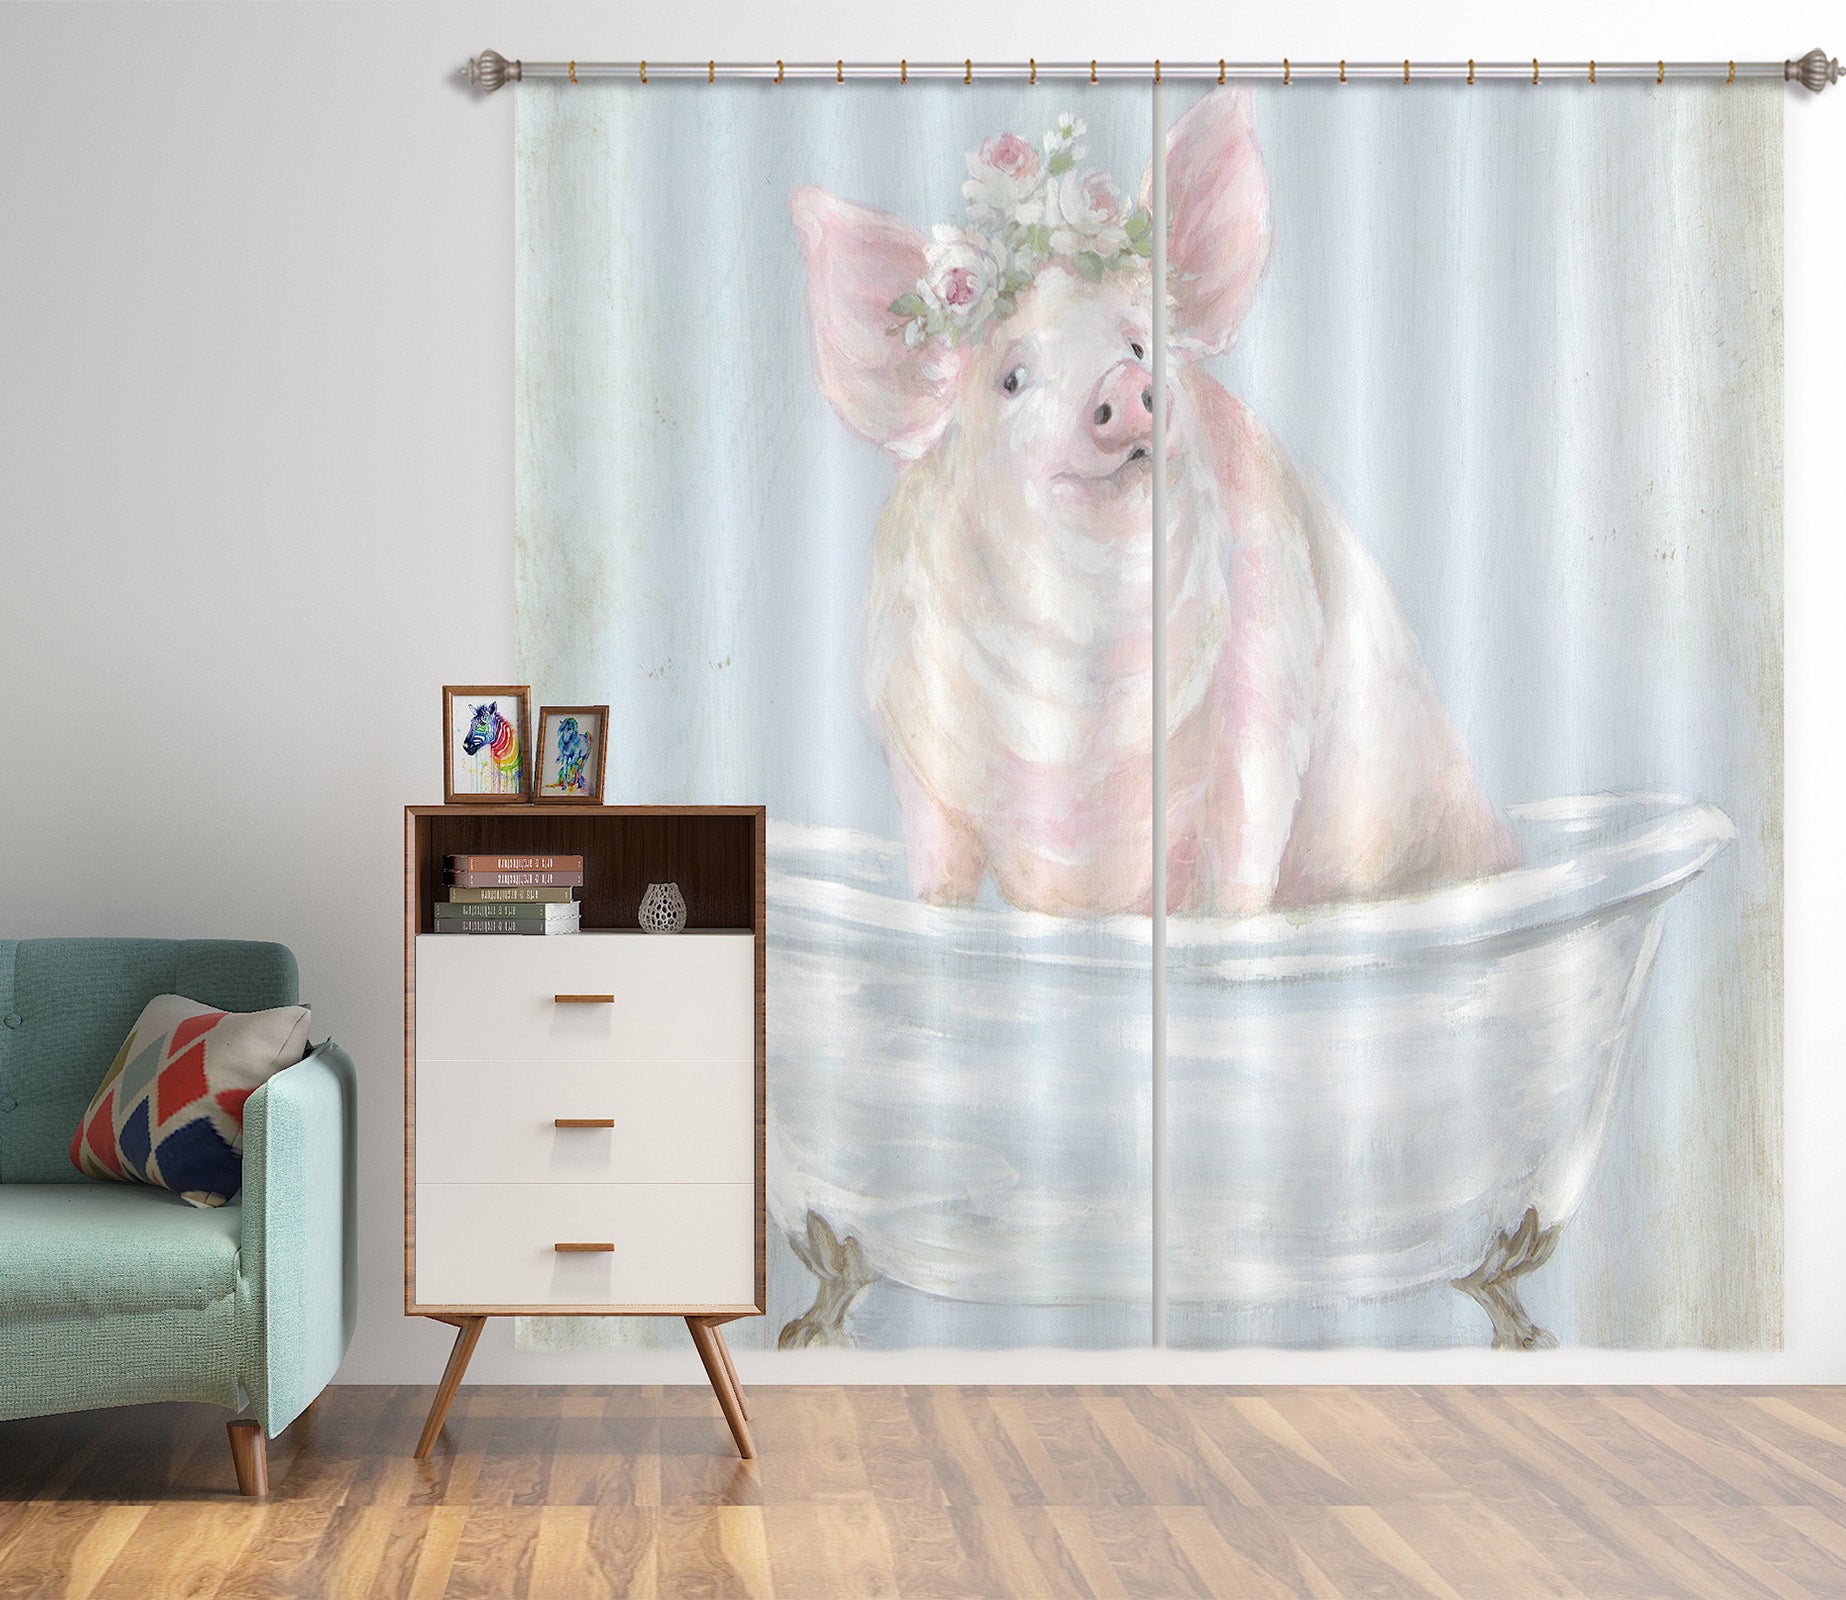 3D Wreath Pig Tub 3058 Debi Coules Curtain Curtains Drapes